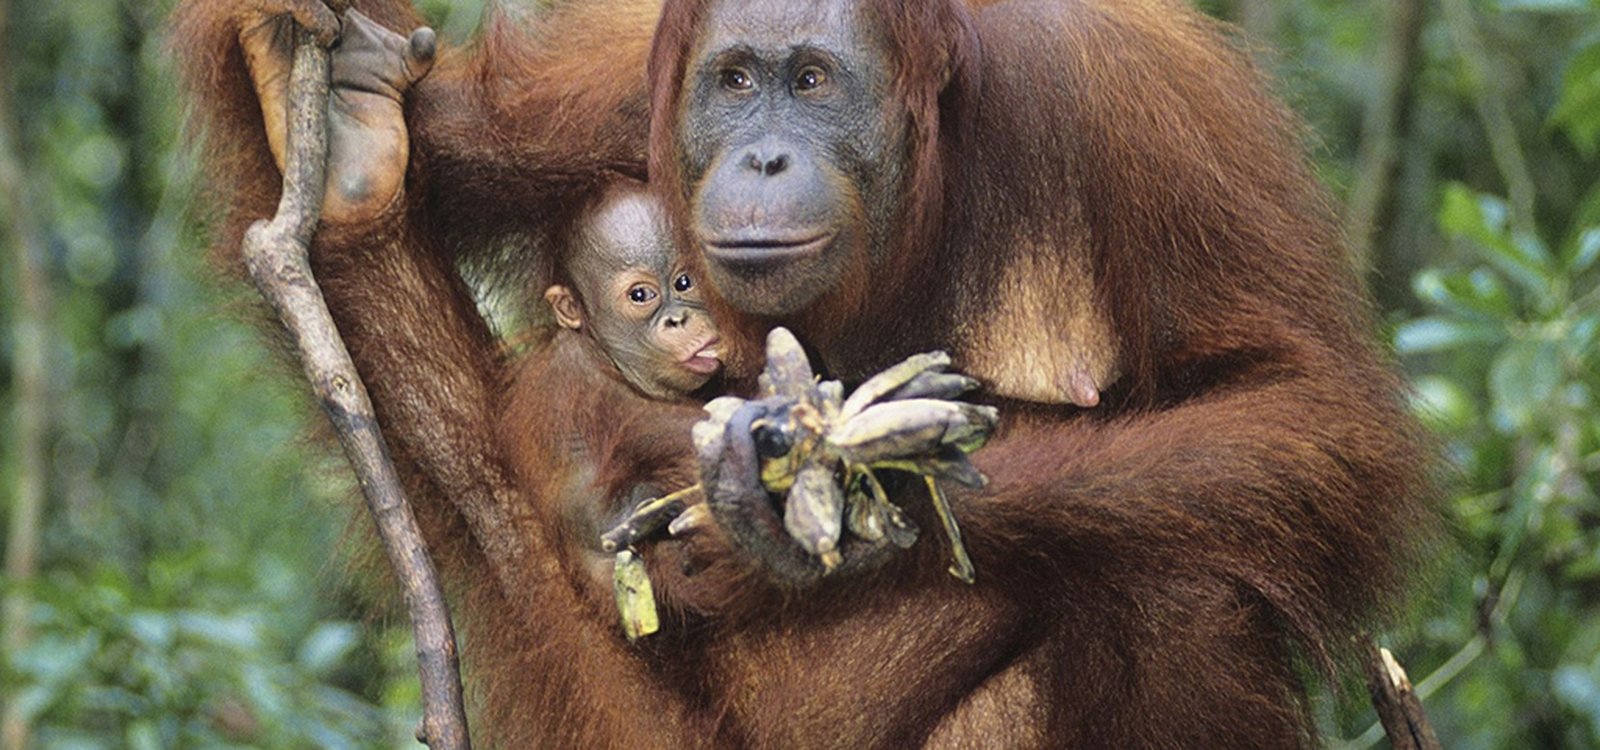 Orangutan, gatunek małpy człekokształtnej, jest spokrewniony z człowiekiem.